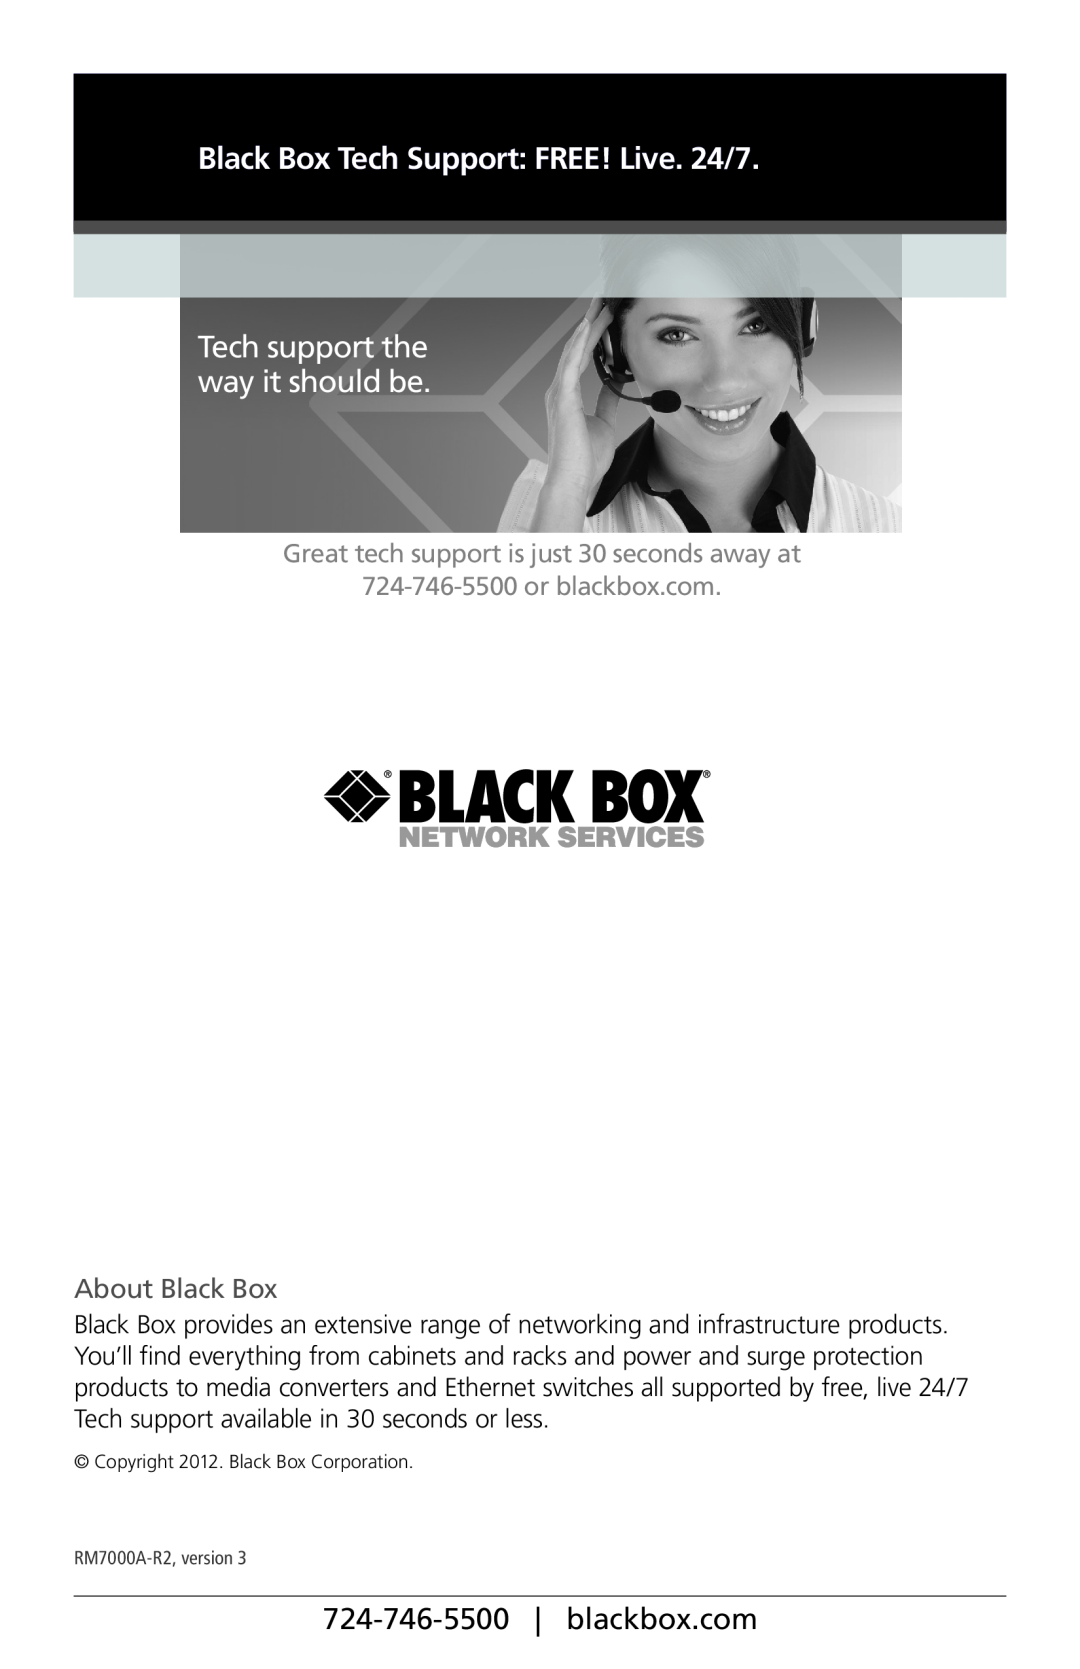 Black Box 42U, 51U, 37U, 22U, 15U Tech support the way it should be, About Black Box, Black Box Tech Support FREE! Live. 24/7 